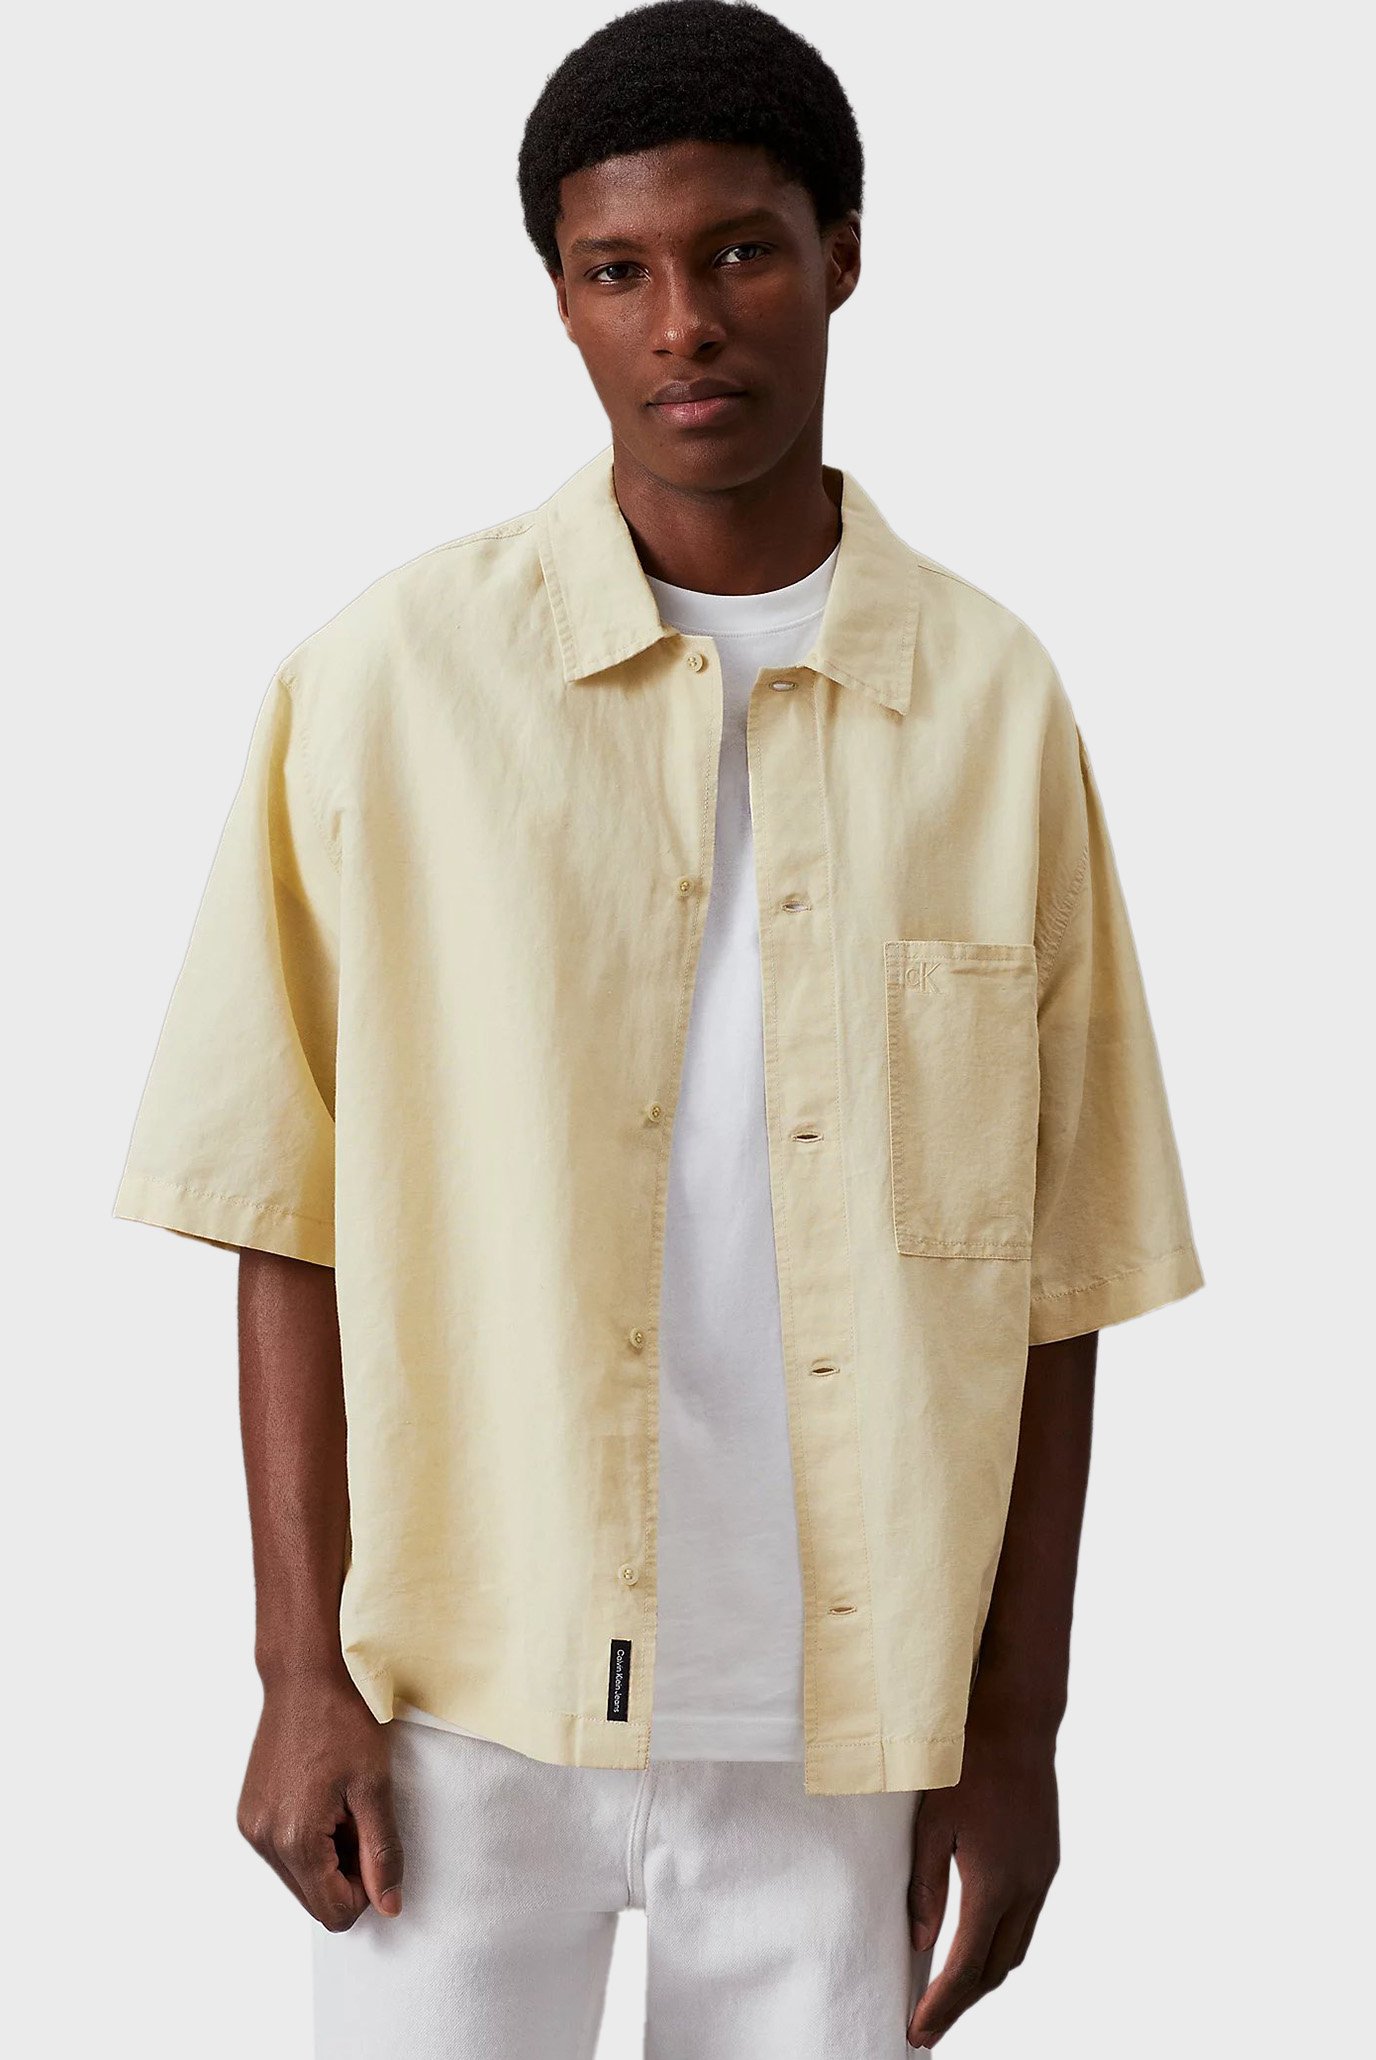 Мужская желтая льняная рубашка 1